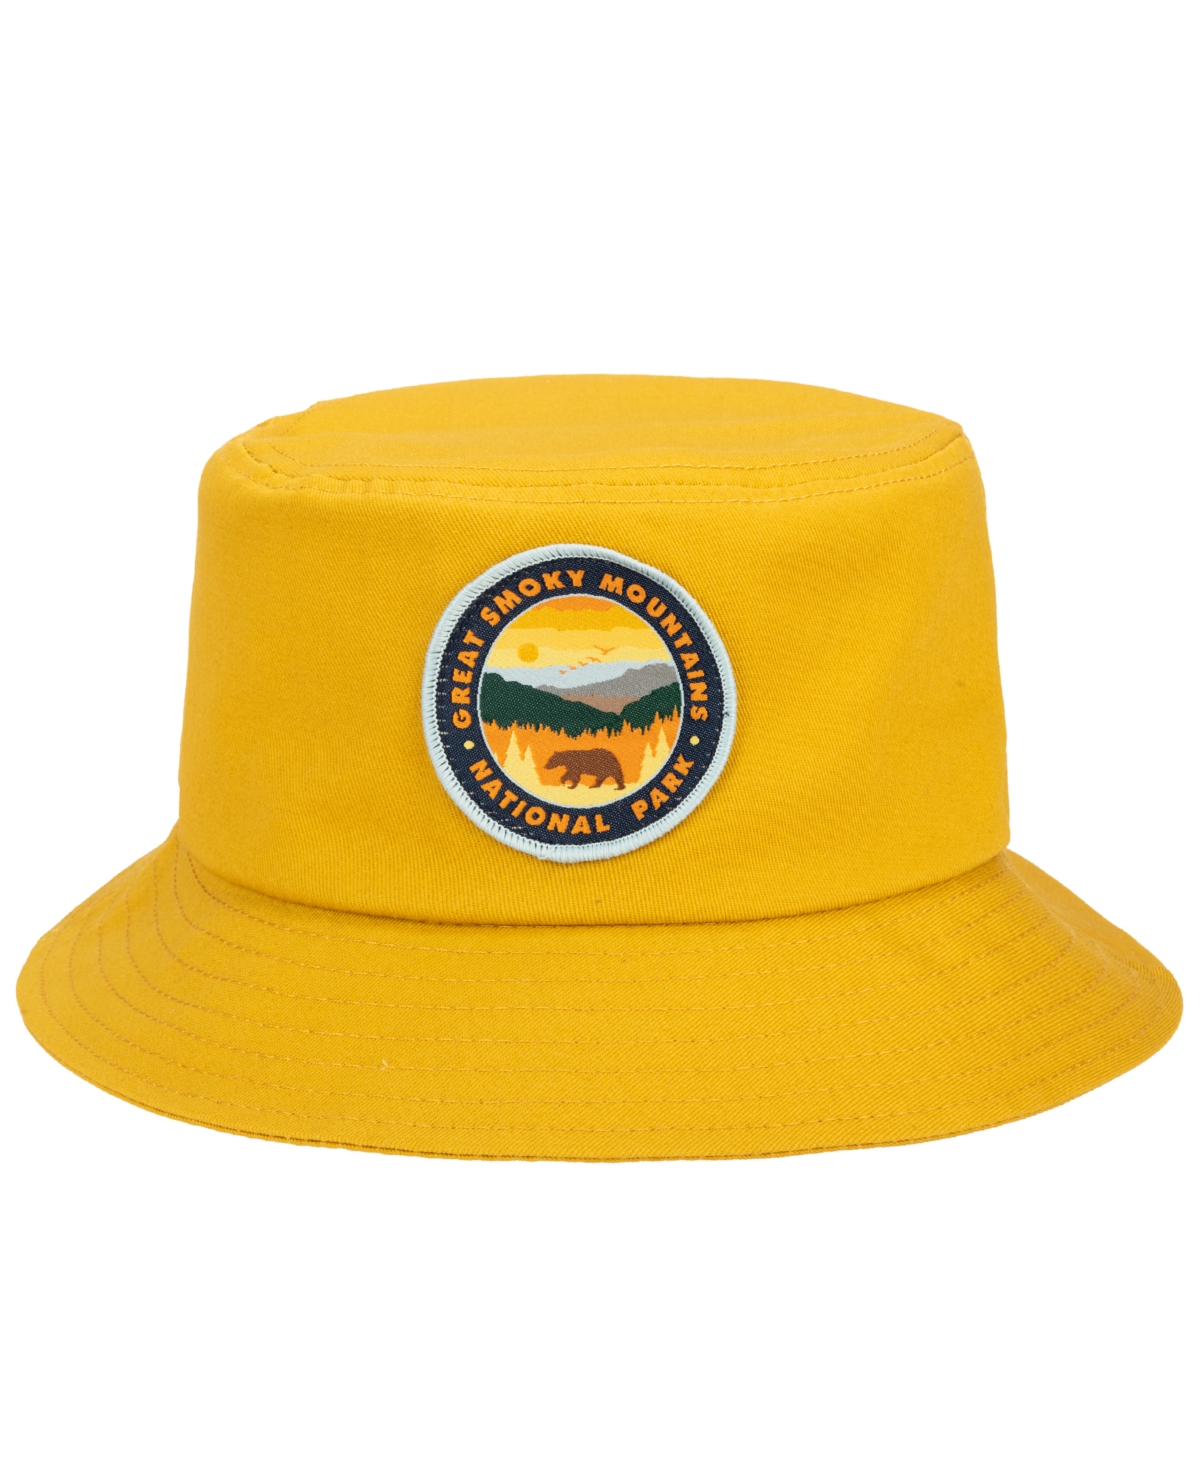 Men's Bucket Hat - Smoky Mountain Mustard